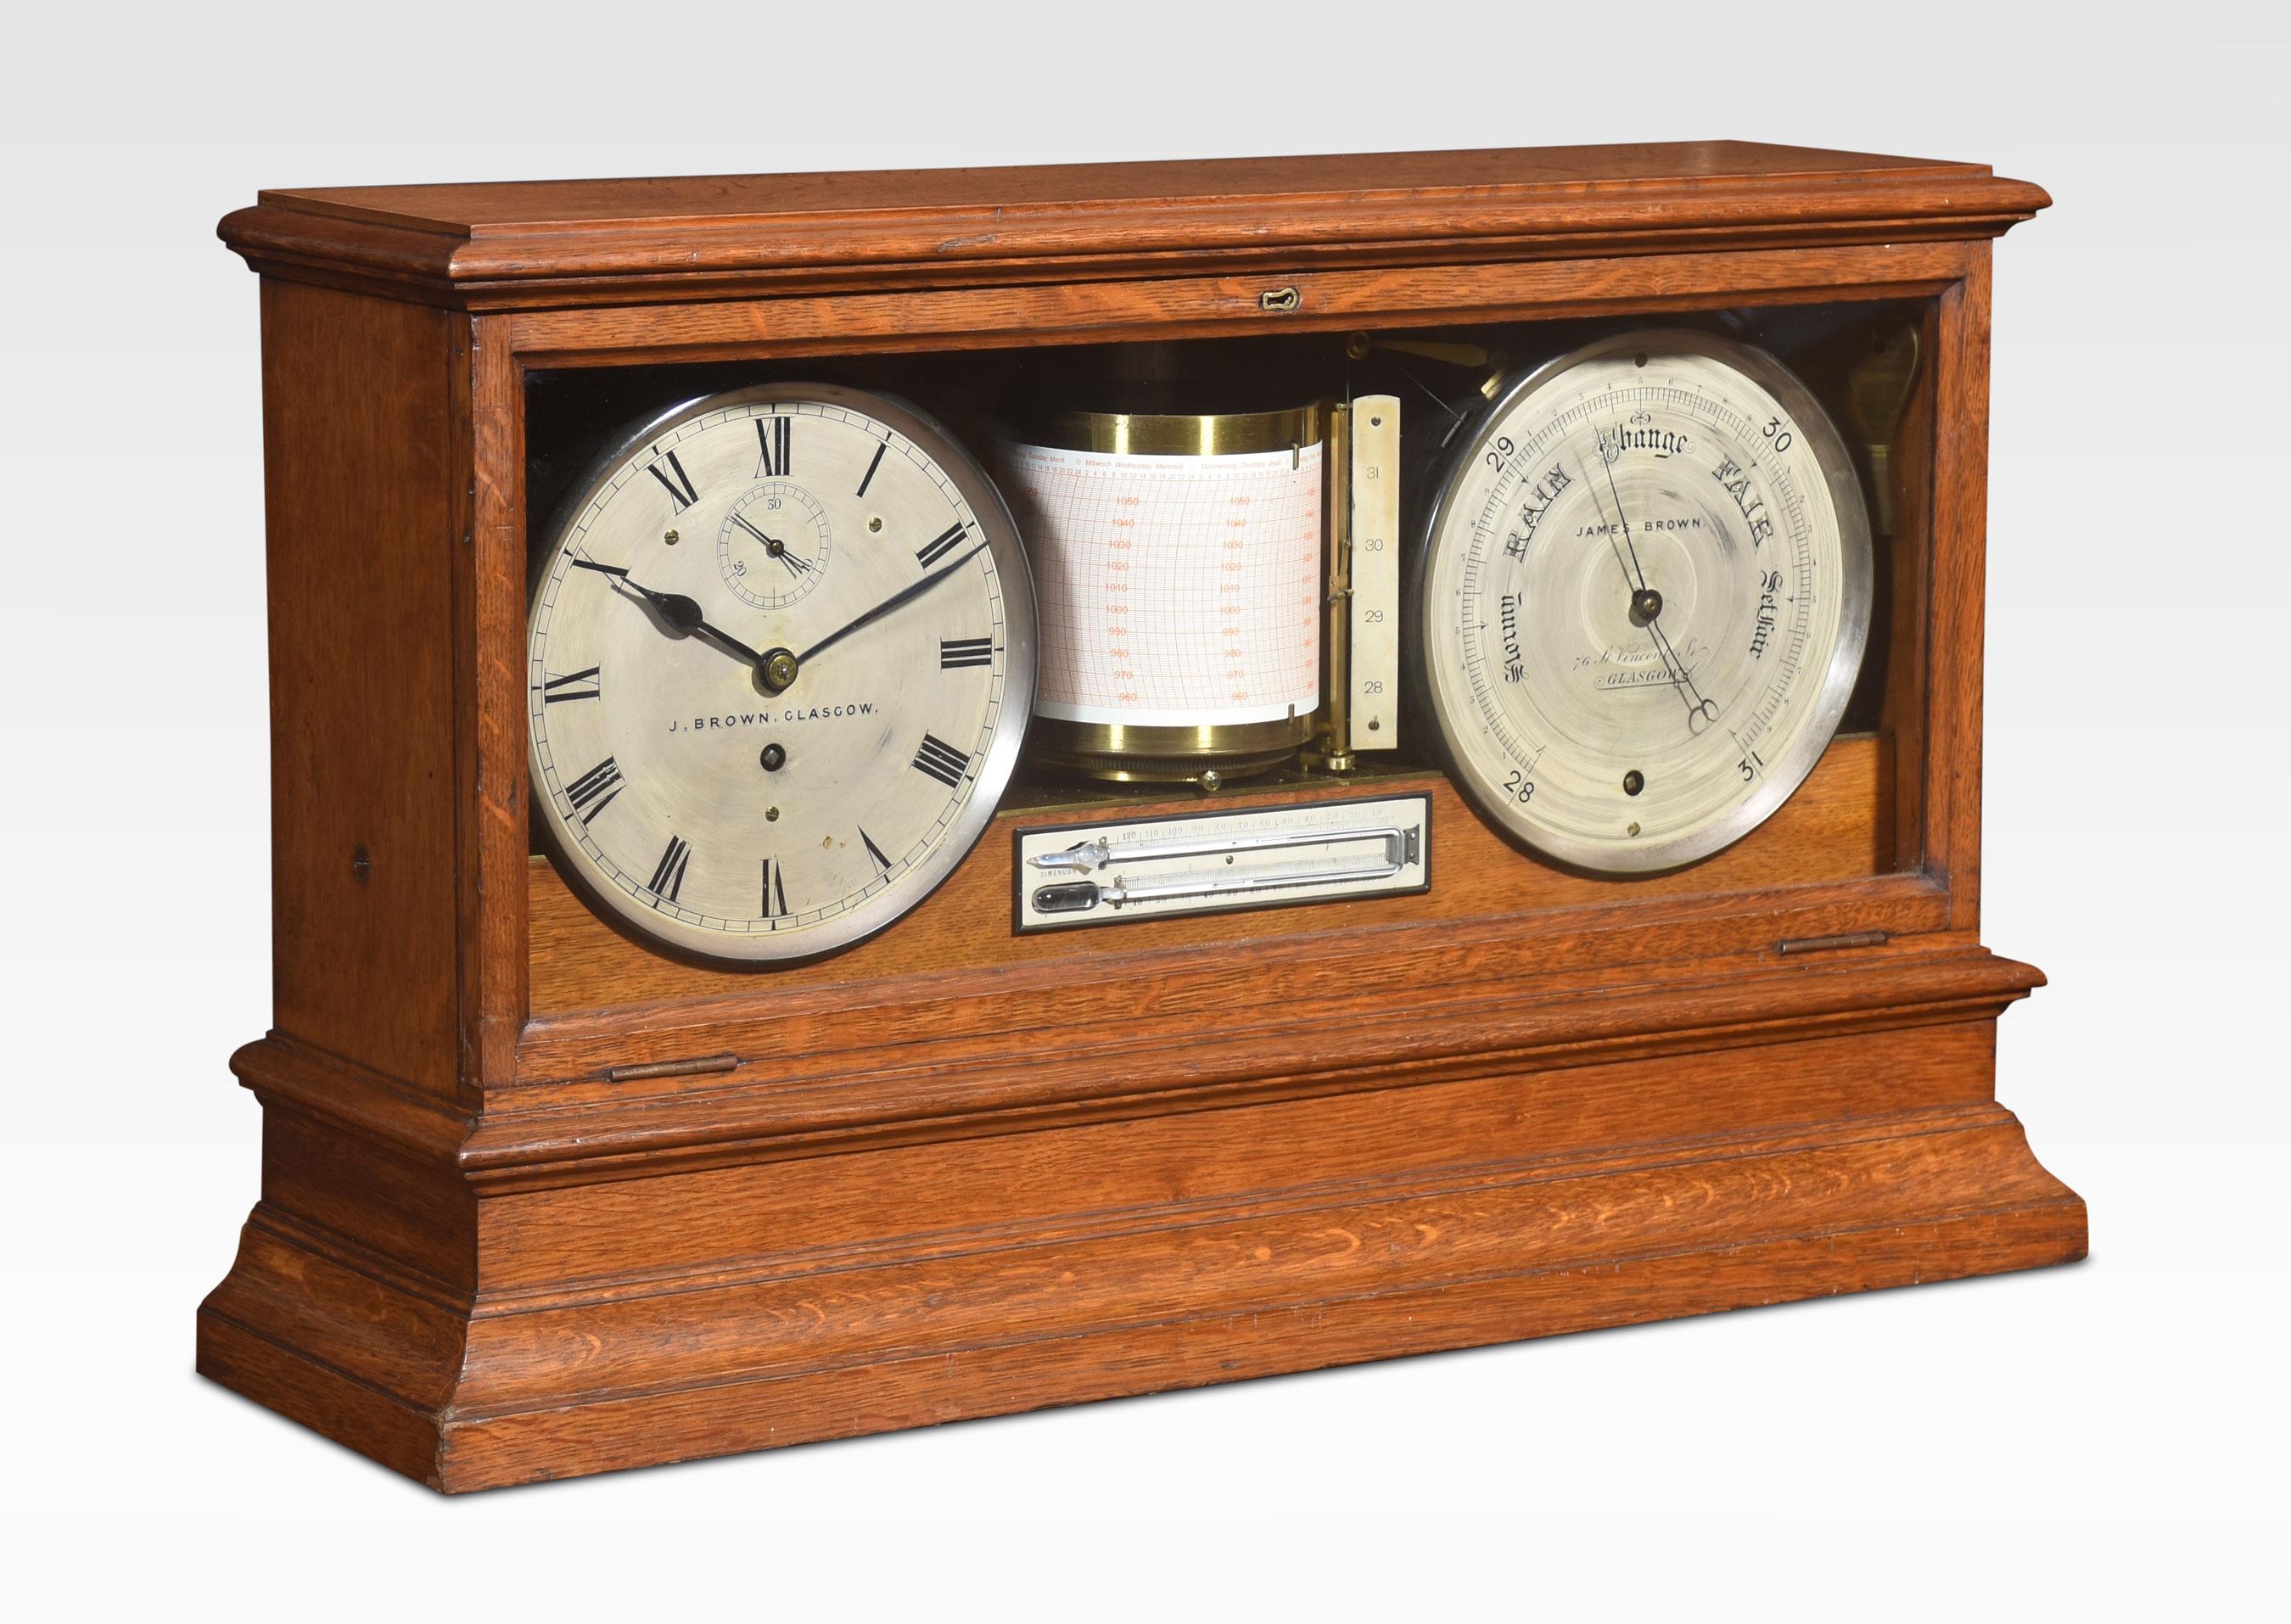 Wetterstation im Eichengehäuse von James Brown Glasgow mit versilberten Ziffernblättern, bestehend aus einer Uhr mit römischen Ziffern und Sekundenskala, einem Barometer und einem zentralen Barographen über einem Thermometer, in einem verglasten